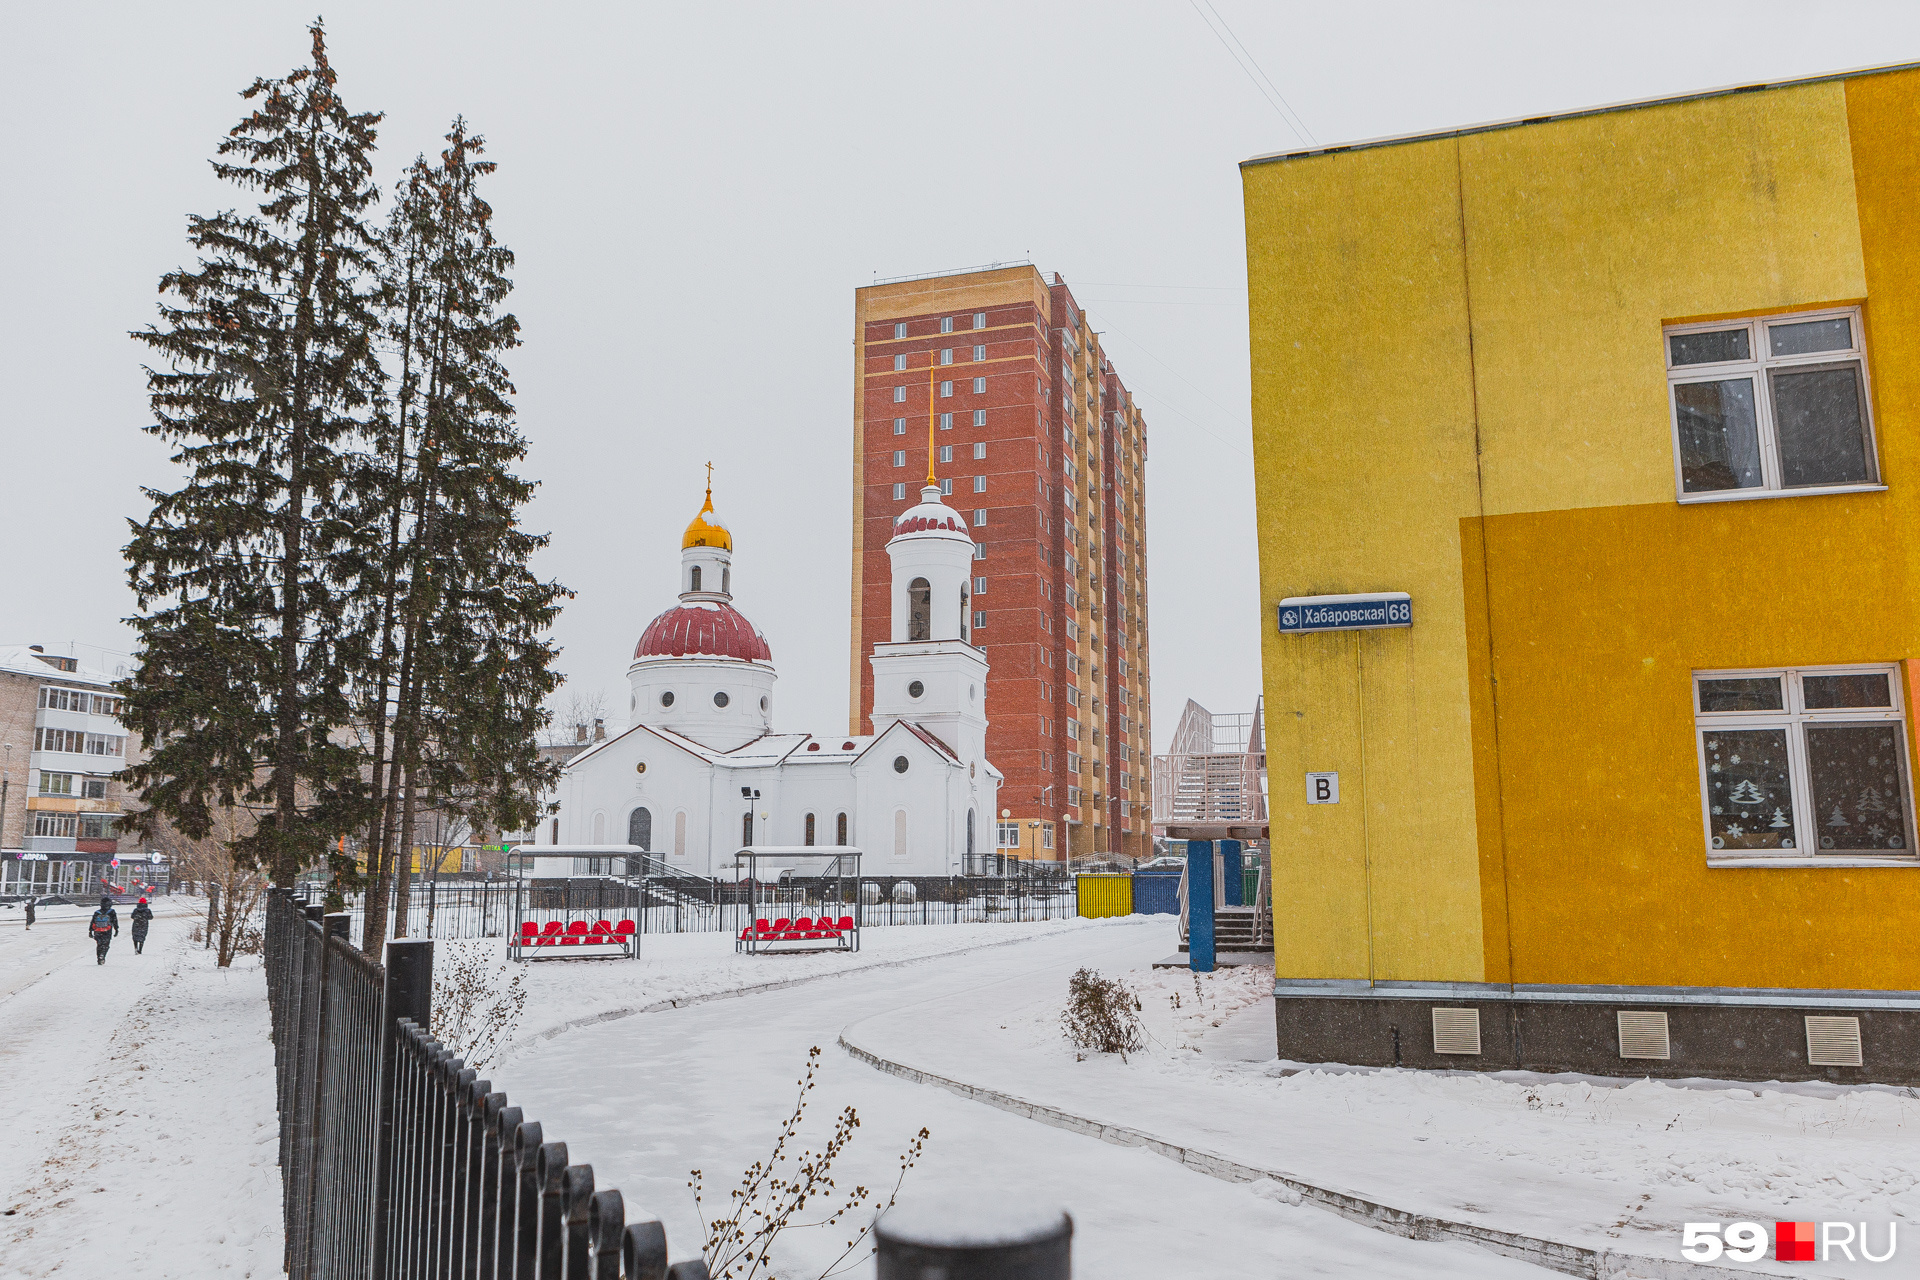 В центре ЖК стоит церковь, а рядом с ней — автобусная остановка «Боровики»